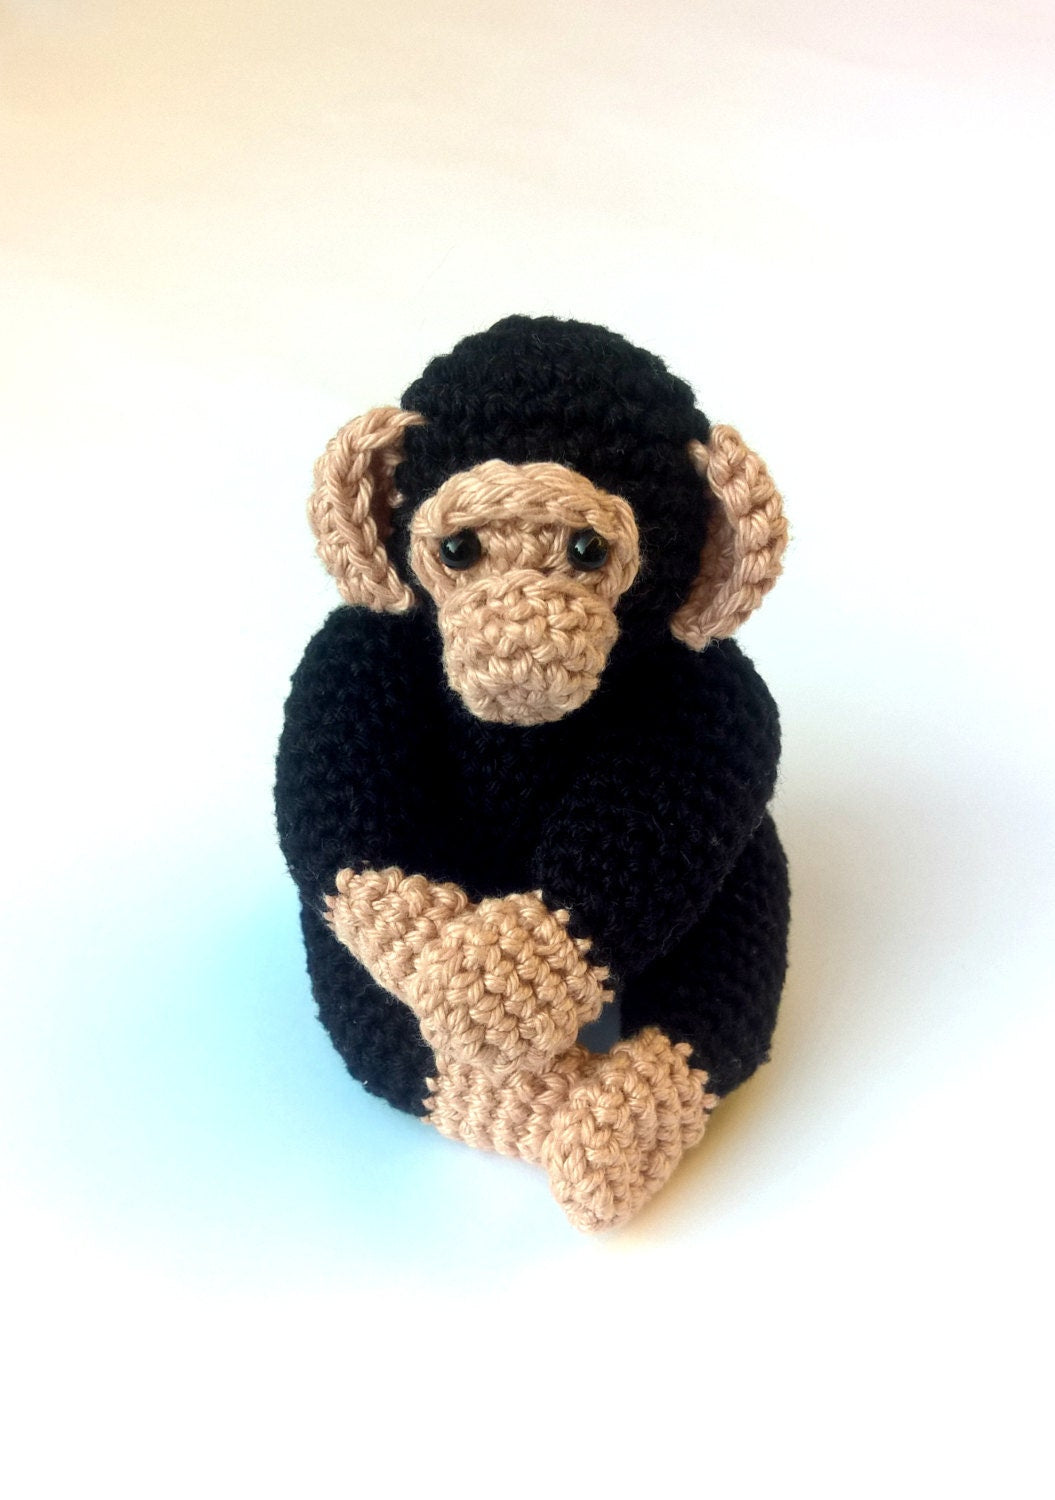 Chimpanzee monkey stuffed animal plush toy